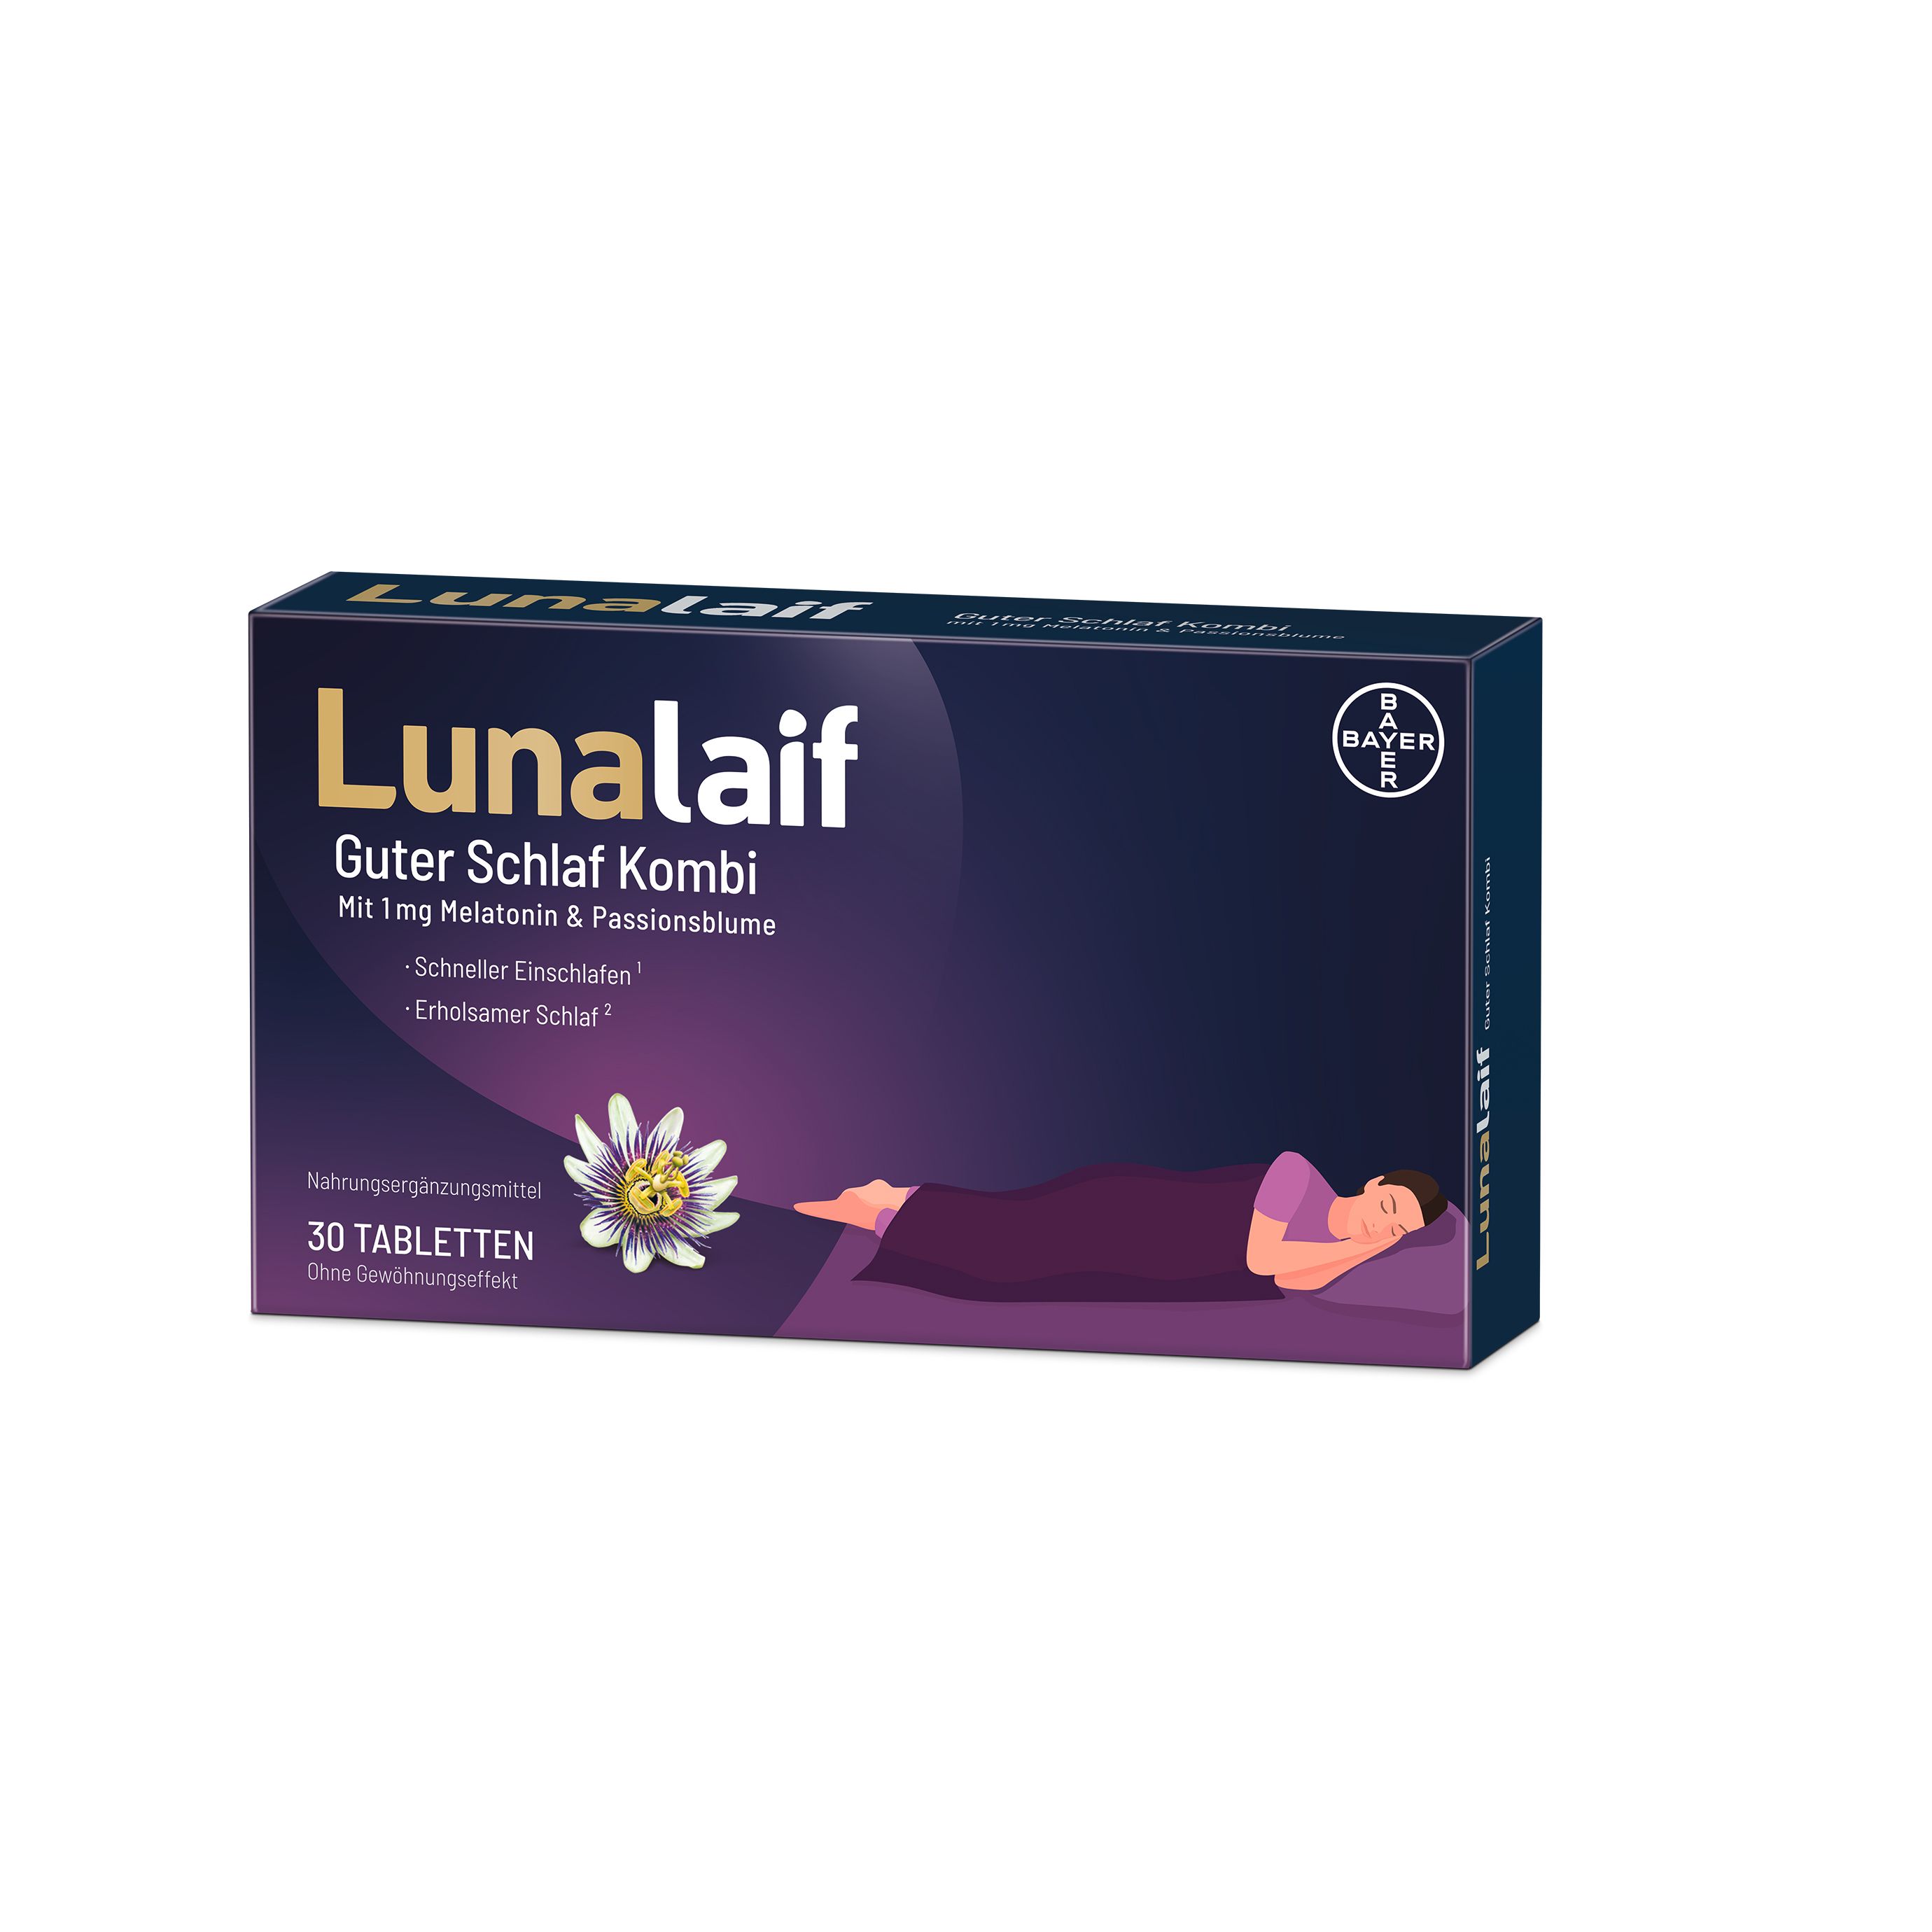 Lunalaif good sleep combination with melatonin